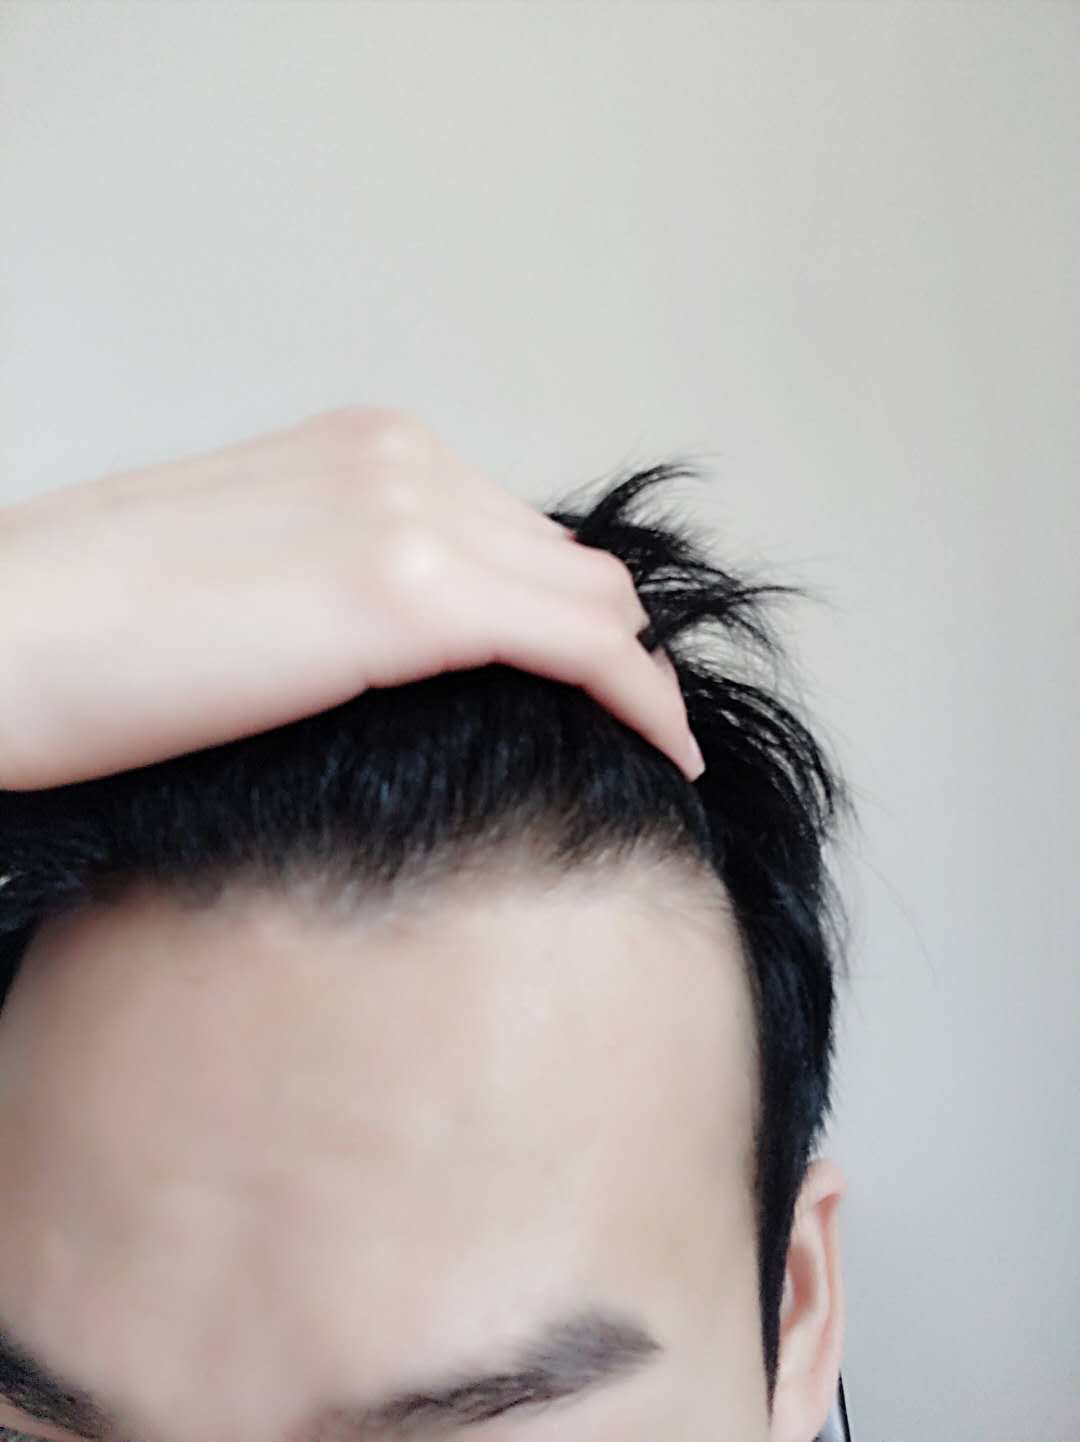 男人“M字”发际线别乱剪发型，注意3个技巧，轻松打造帅气发型_头发